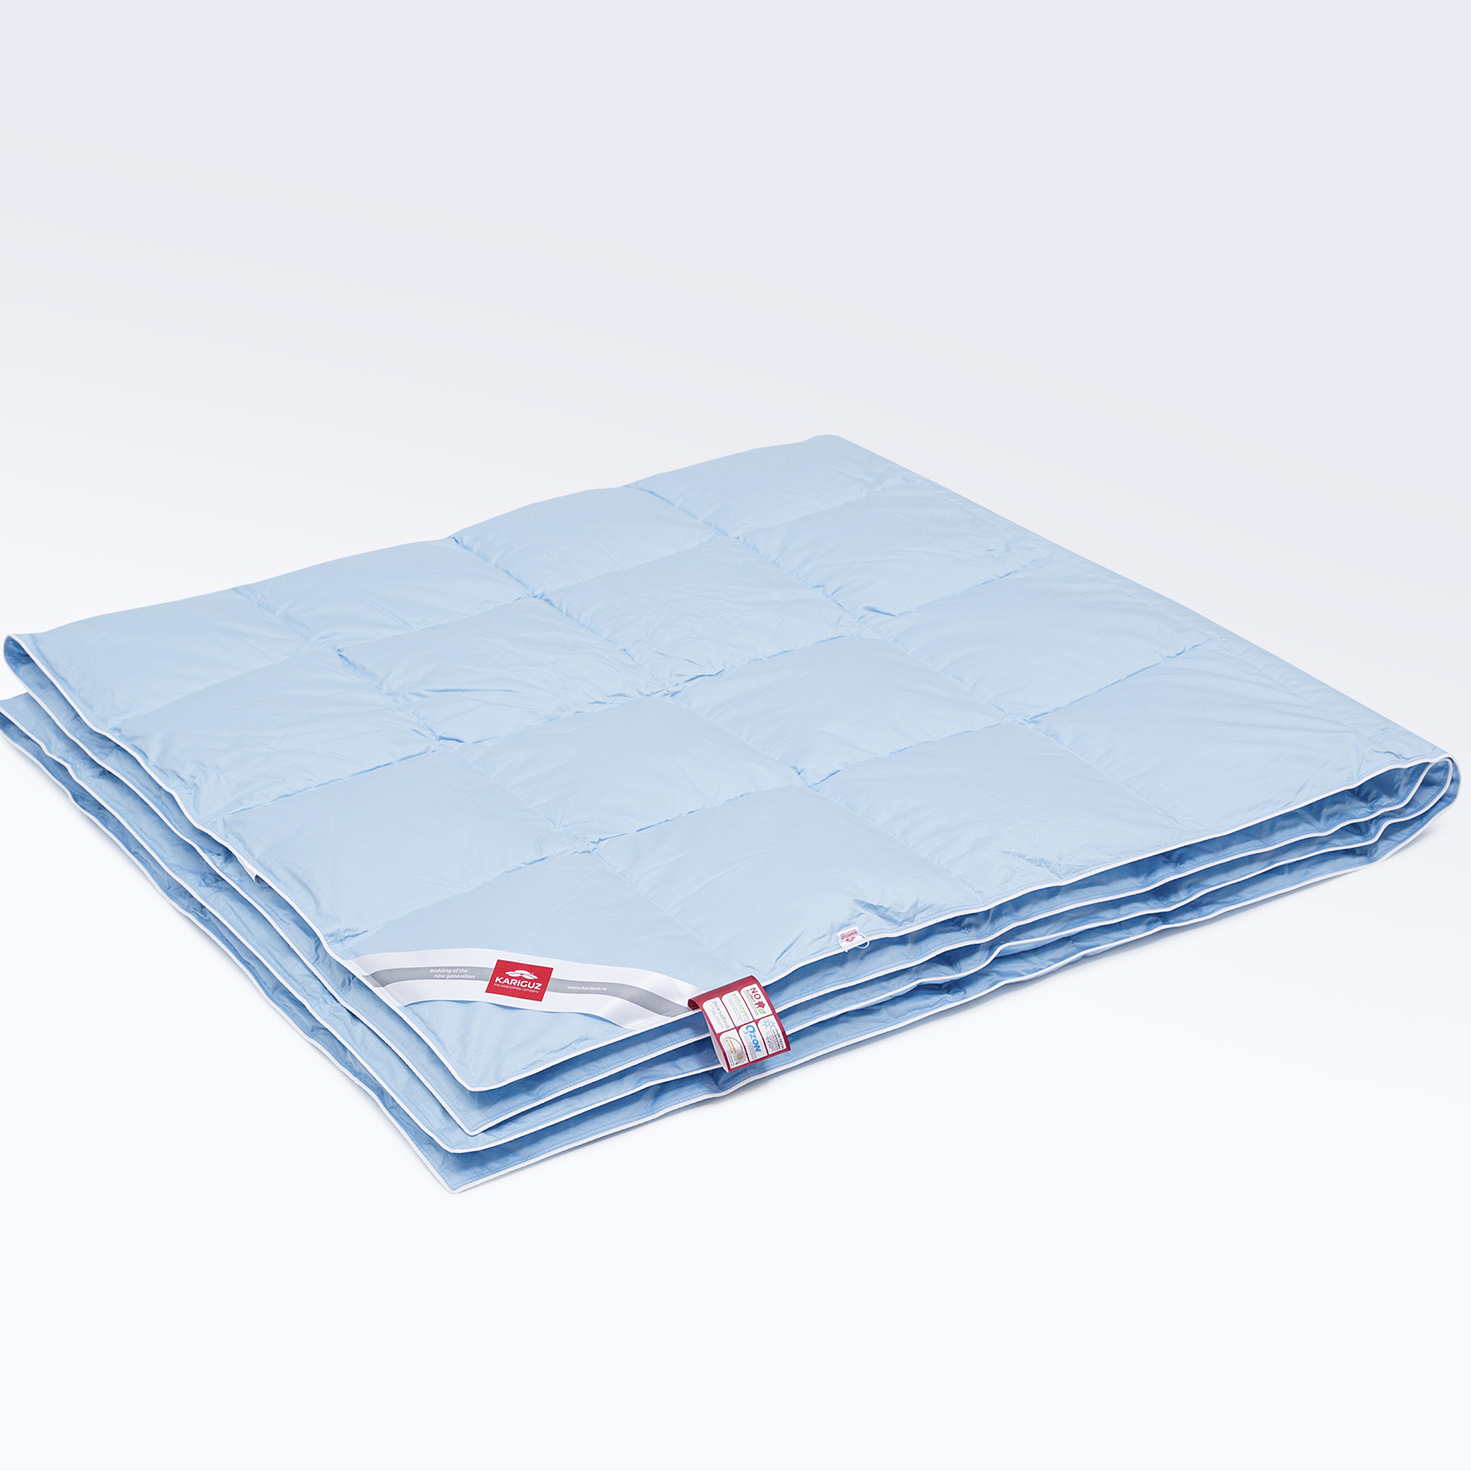 Одеяло Kariguz Лёгкое (200х220 см), размер 200х220 см, цвет голубой kuz503188 Одеяло Kariguz Лёгкое (200х220 см) - фото 1